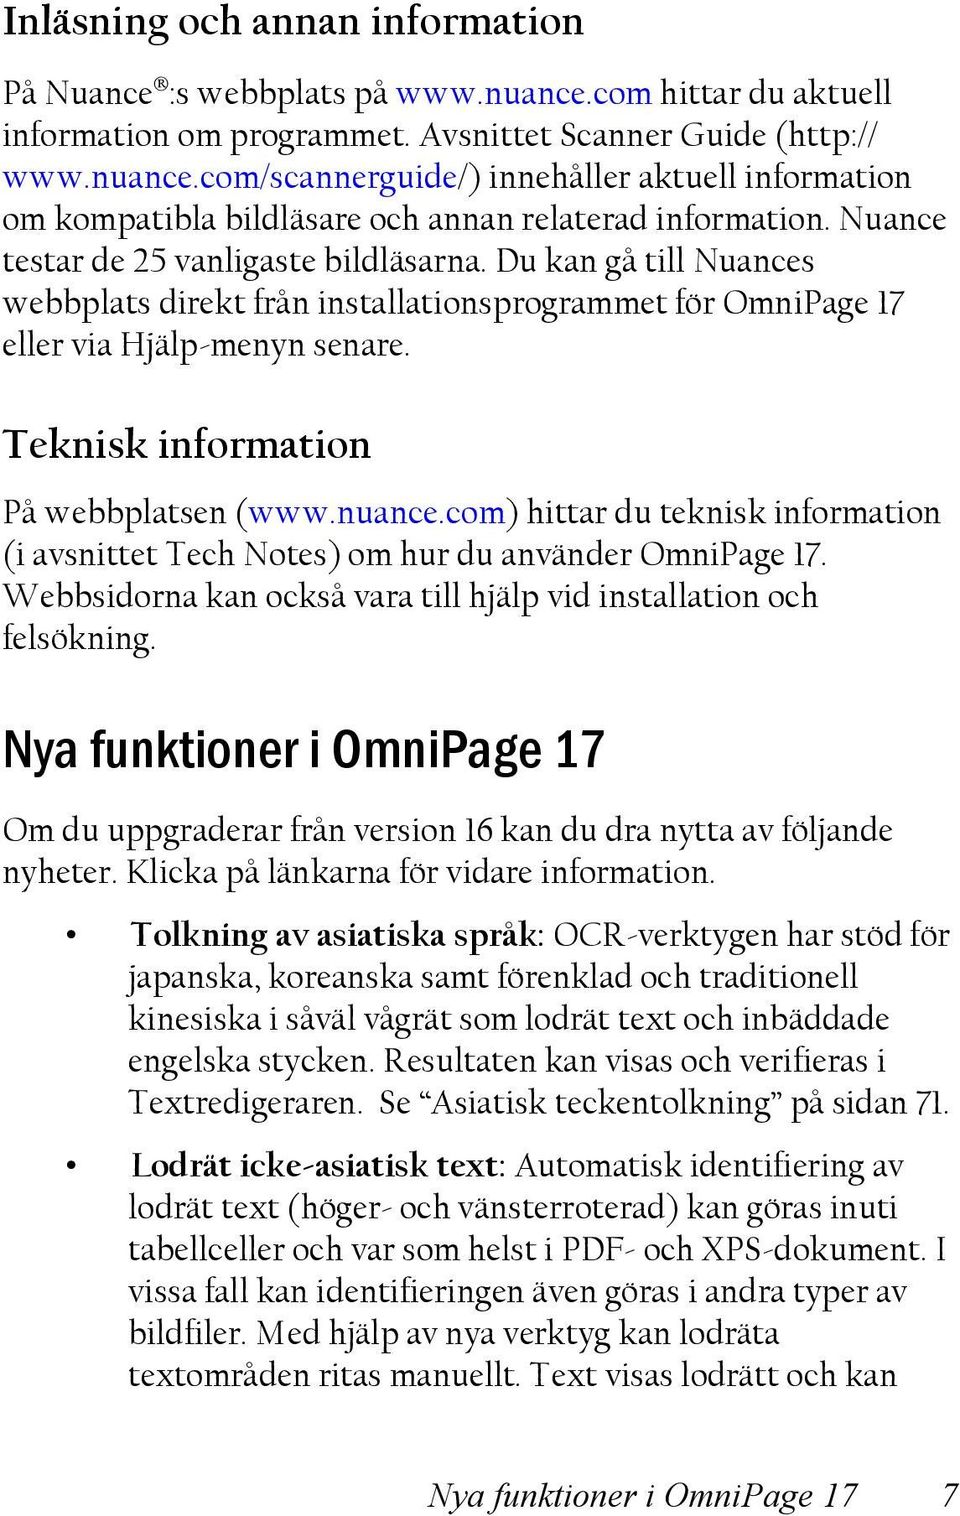 nuance.com) hittar du teknisk information (i avsnittet Tech Notes) om hur du använder OmniPage 17. Webbsidorna kan också vara till hjälp vid installation och felsökning.